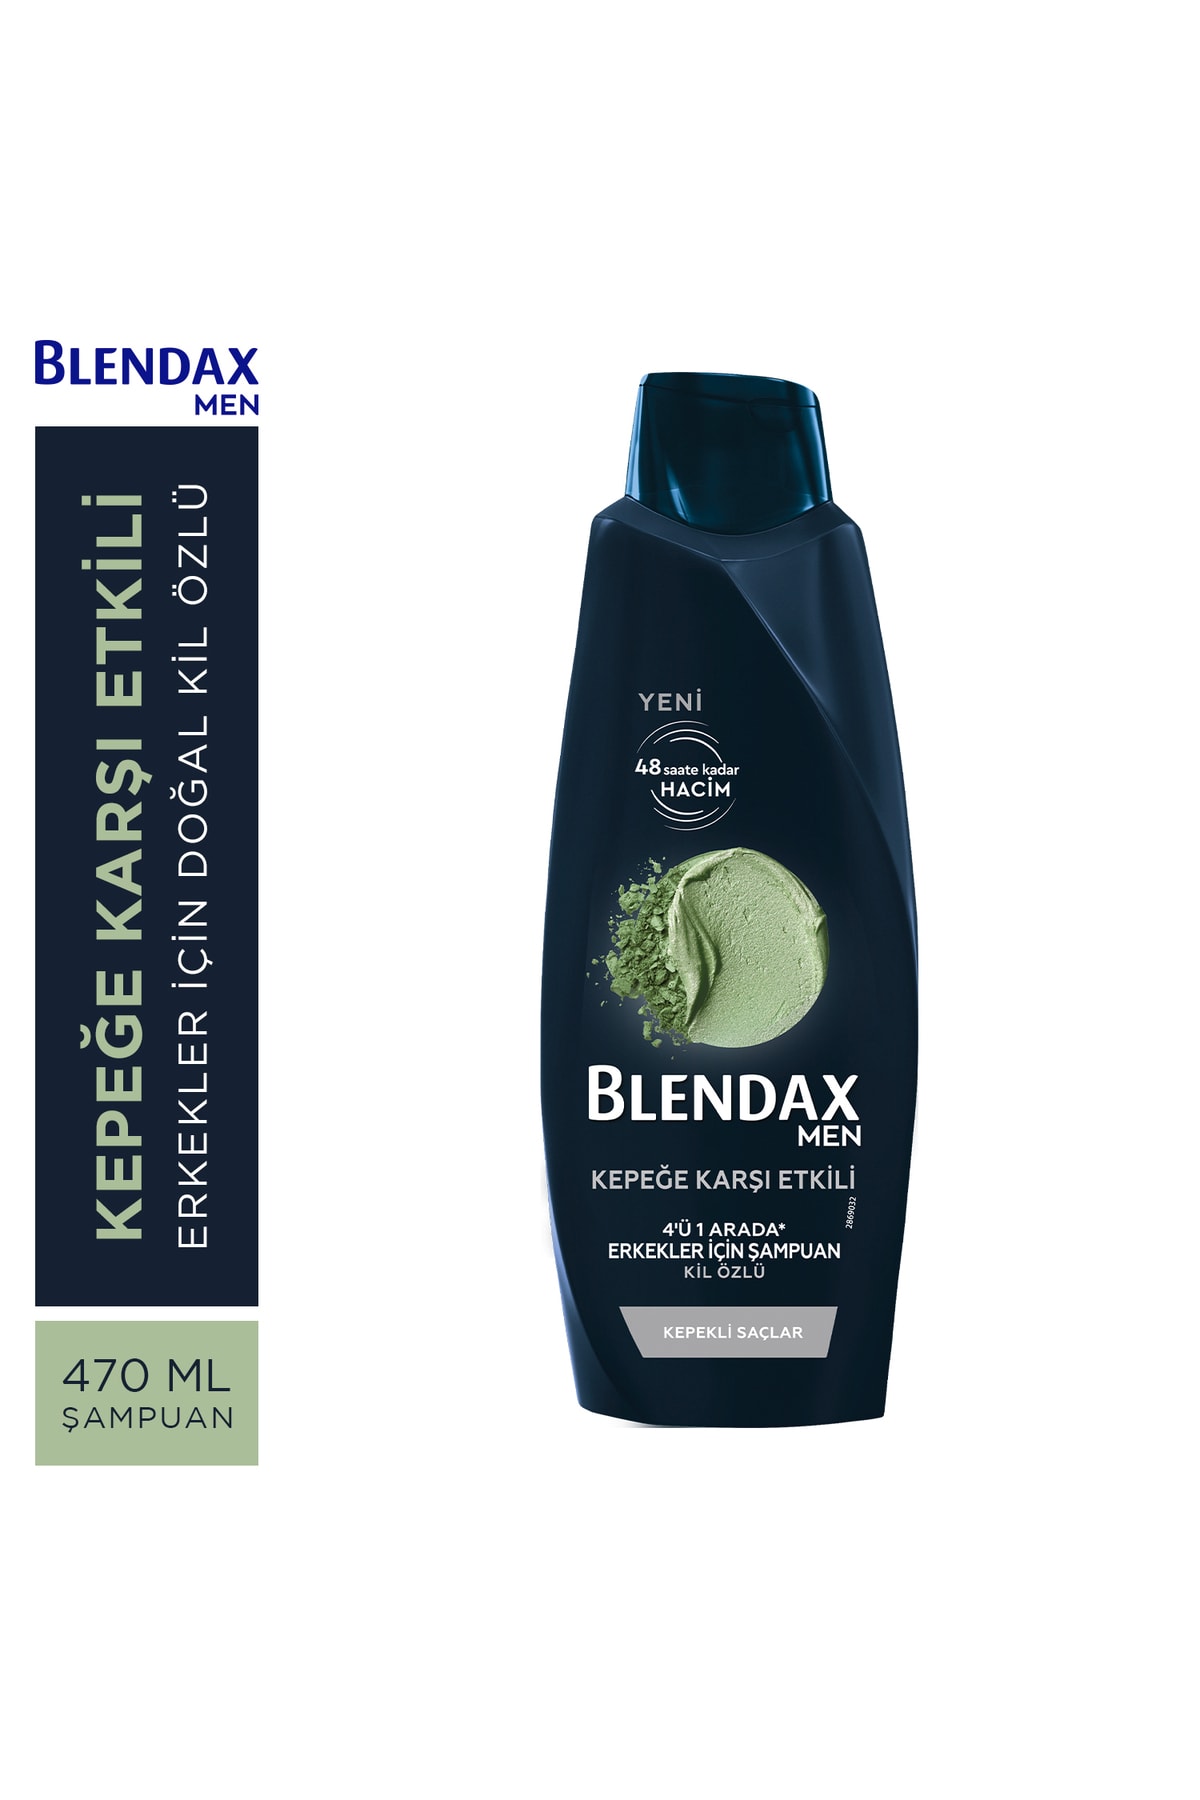 Blendax Erkekler Için Kepeğe Karşı Etkili Şampuan 470 ml